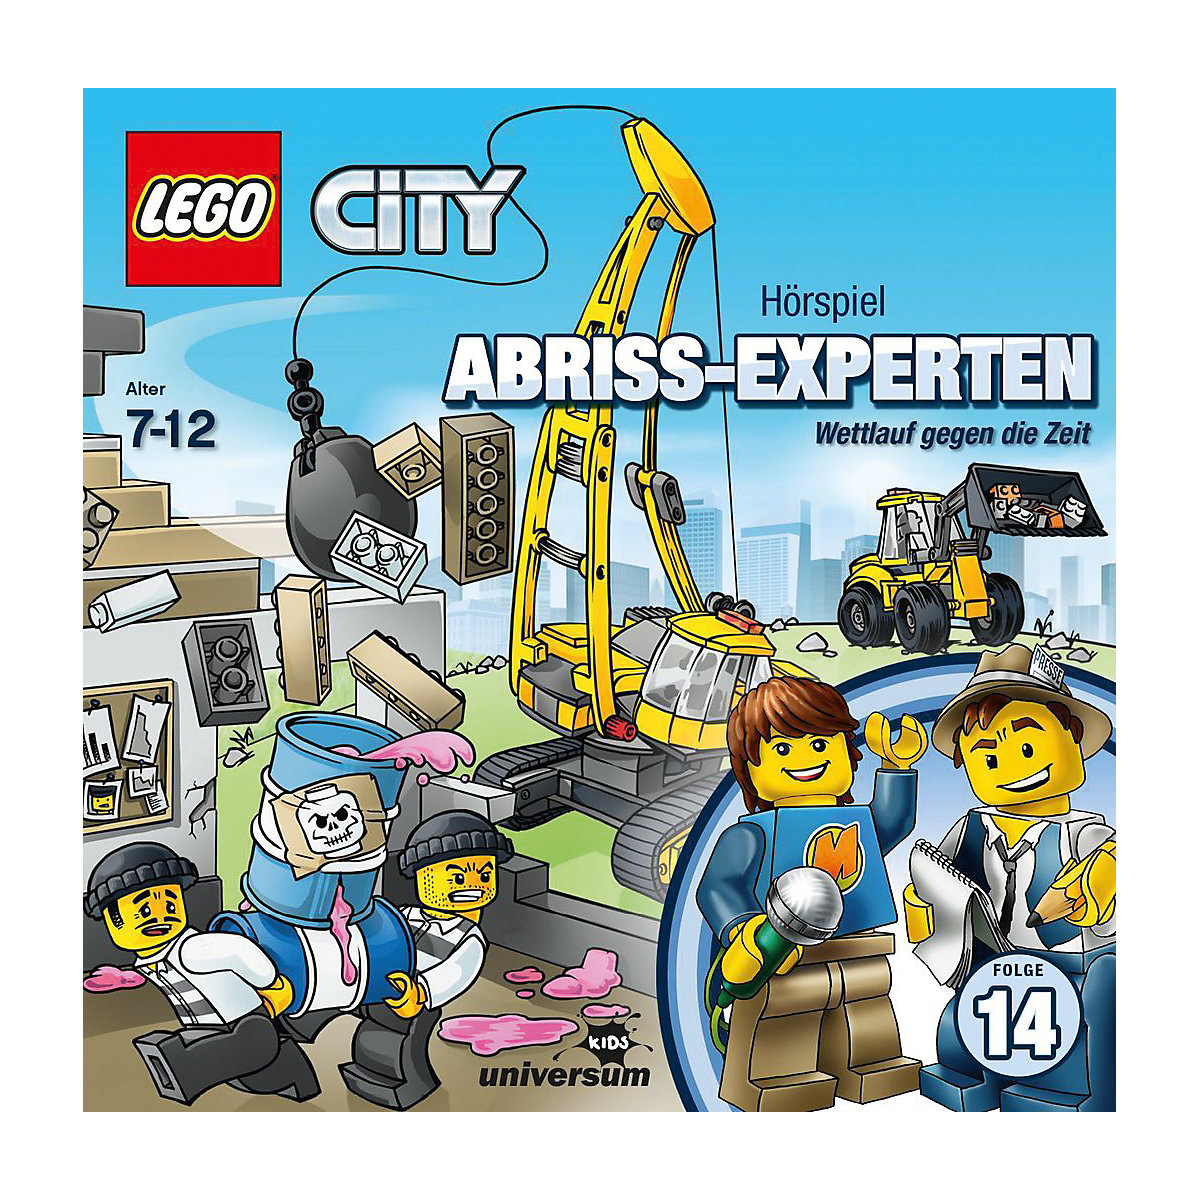 CD LEGO City 14 Abriss-Experten: Wettlauf gegen die Zeit